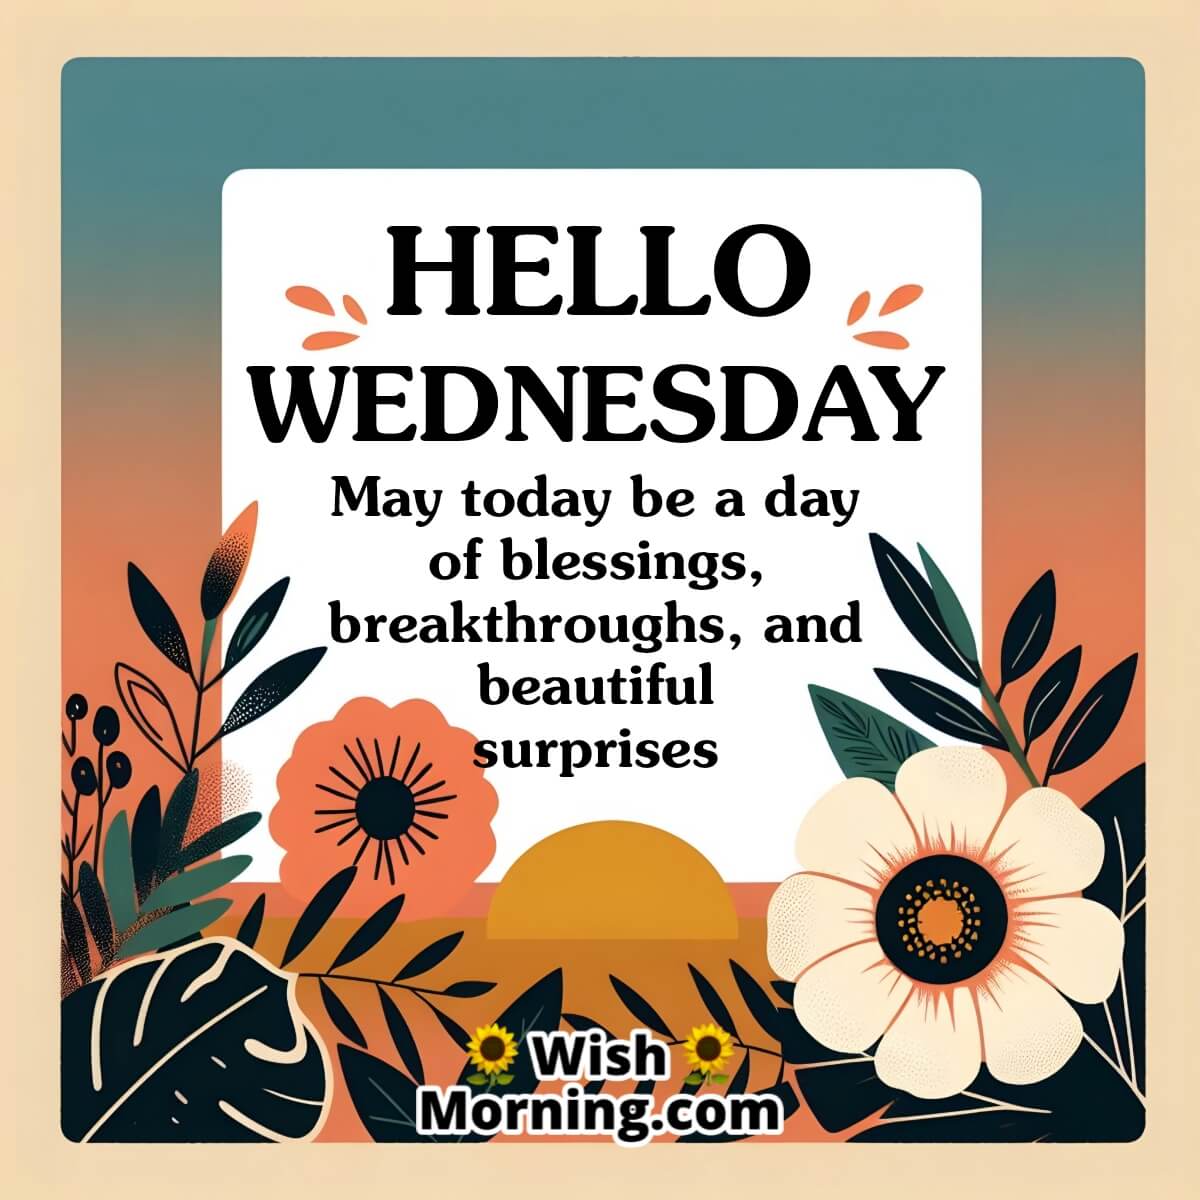 Hello Wednesday Message